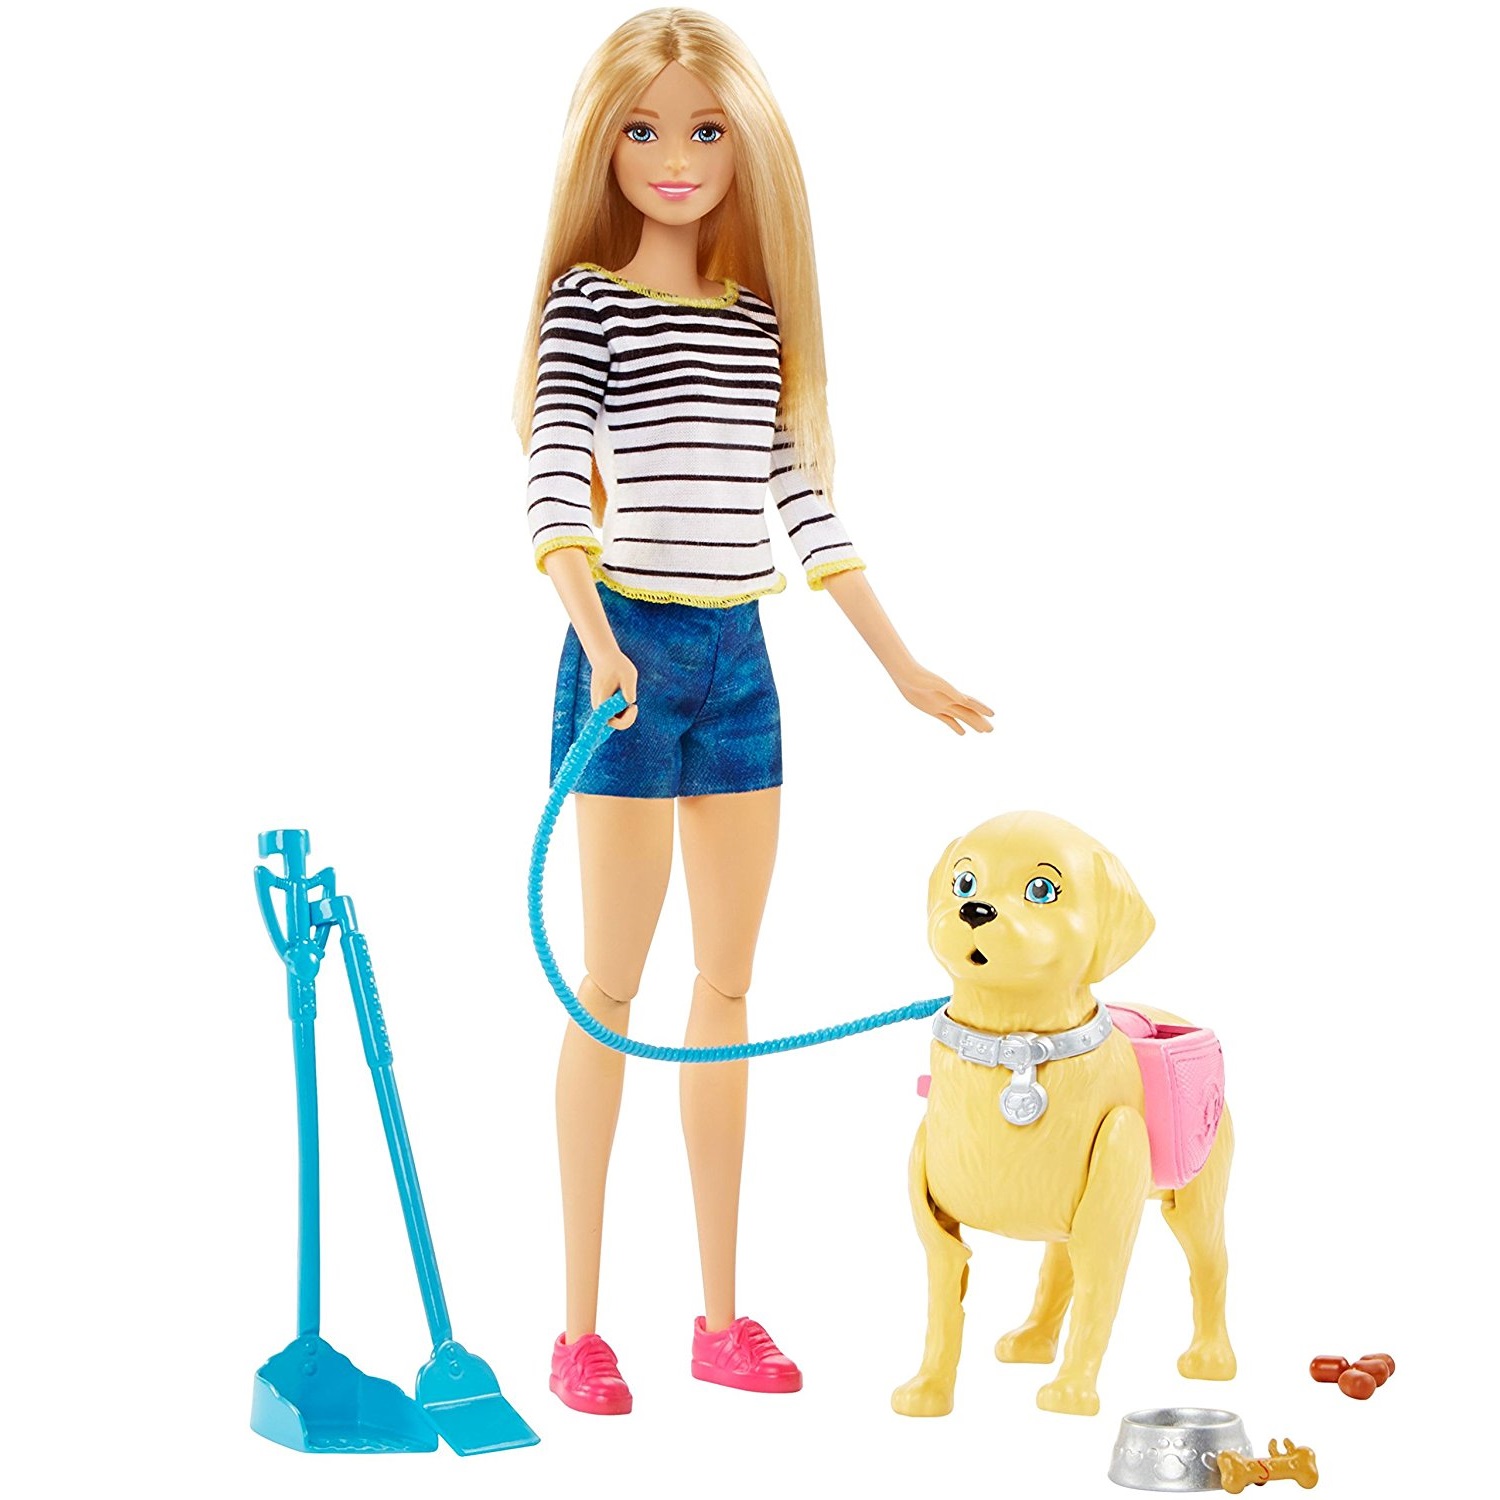 Кукла Barbie прогулка с питомцем, 29 см, dwj68. Кукла Барби Маттел с питомцем. Barbie Стейси с питомцем. Кукла Барби с собакой и щенками детский мир. Игрушки для девушек купить